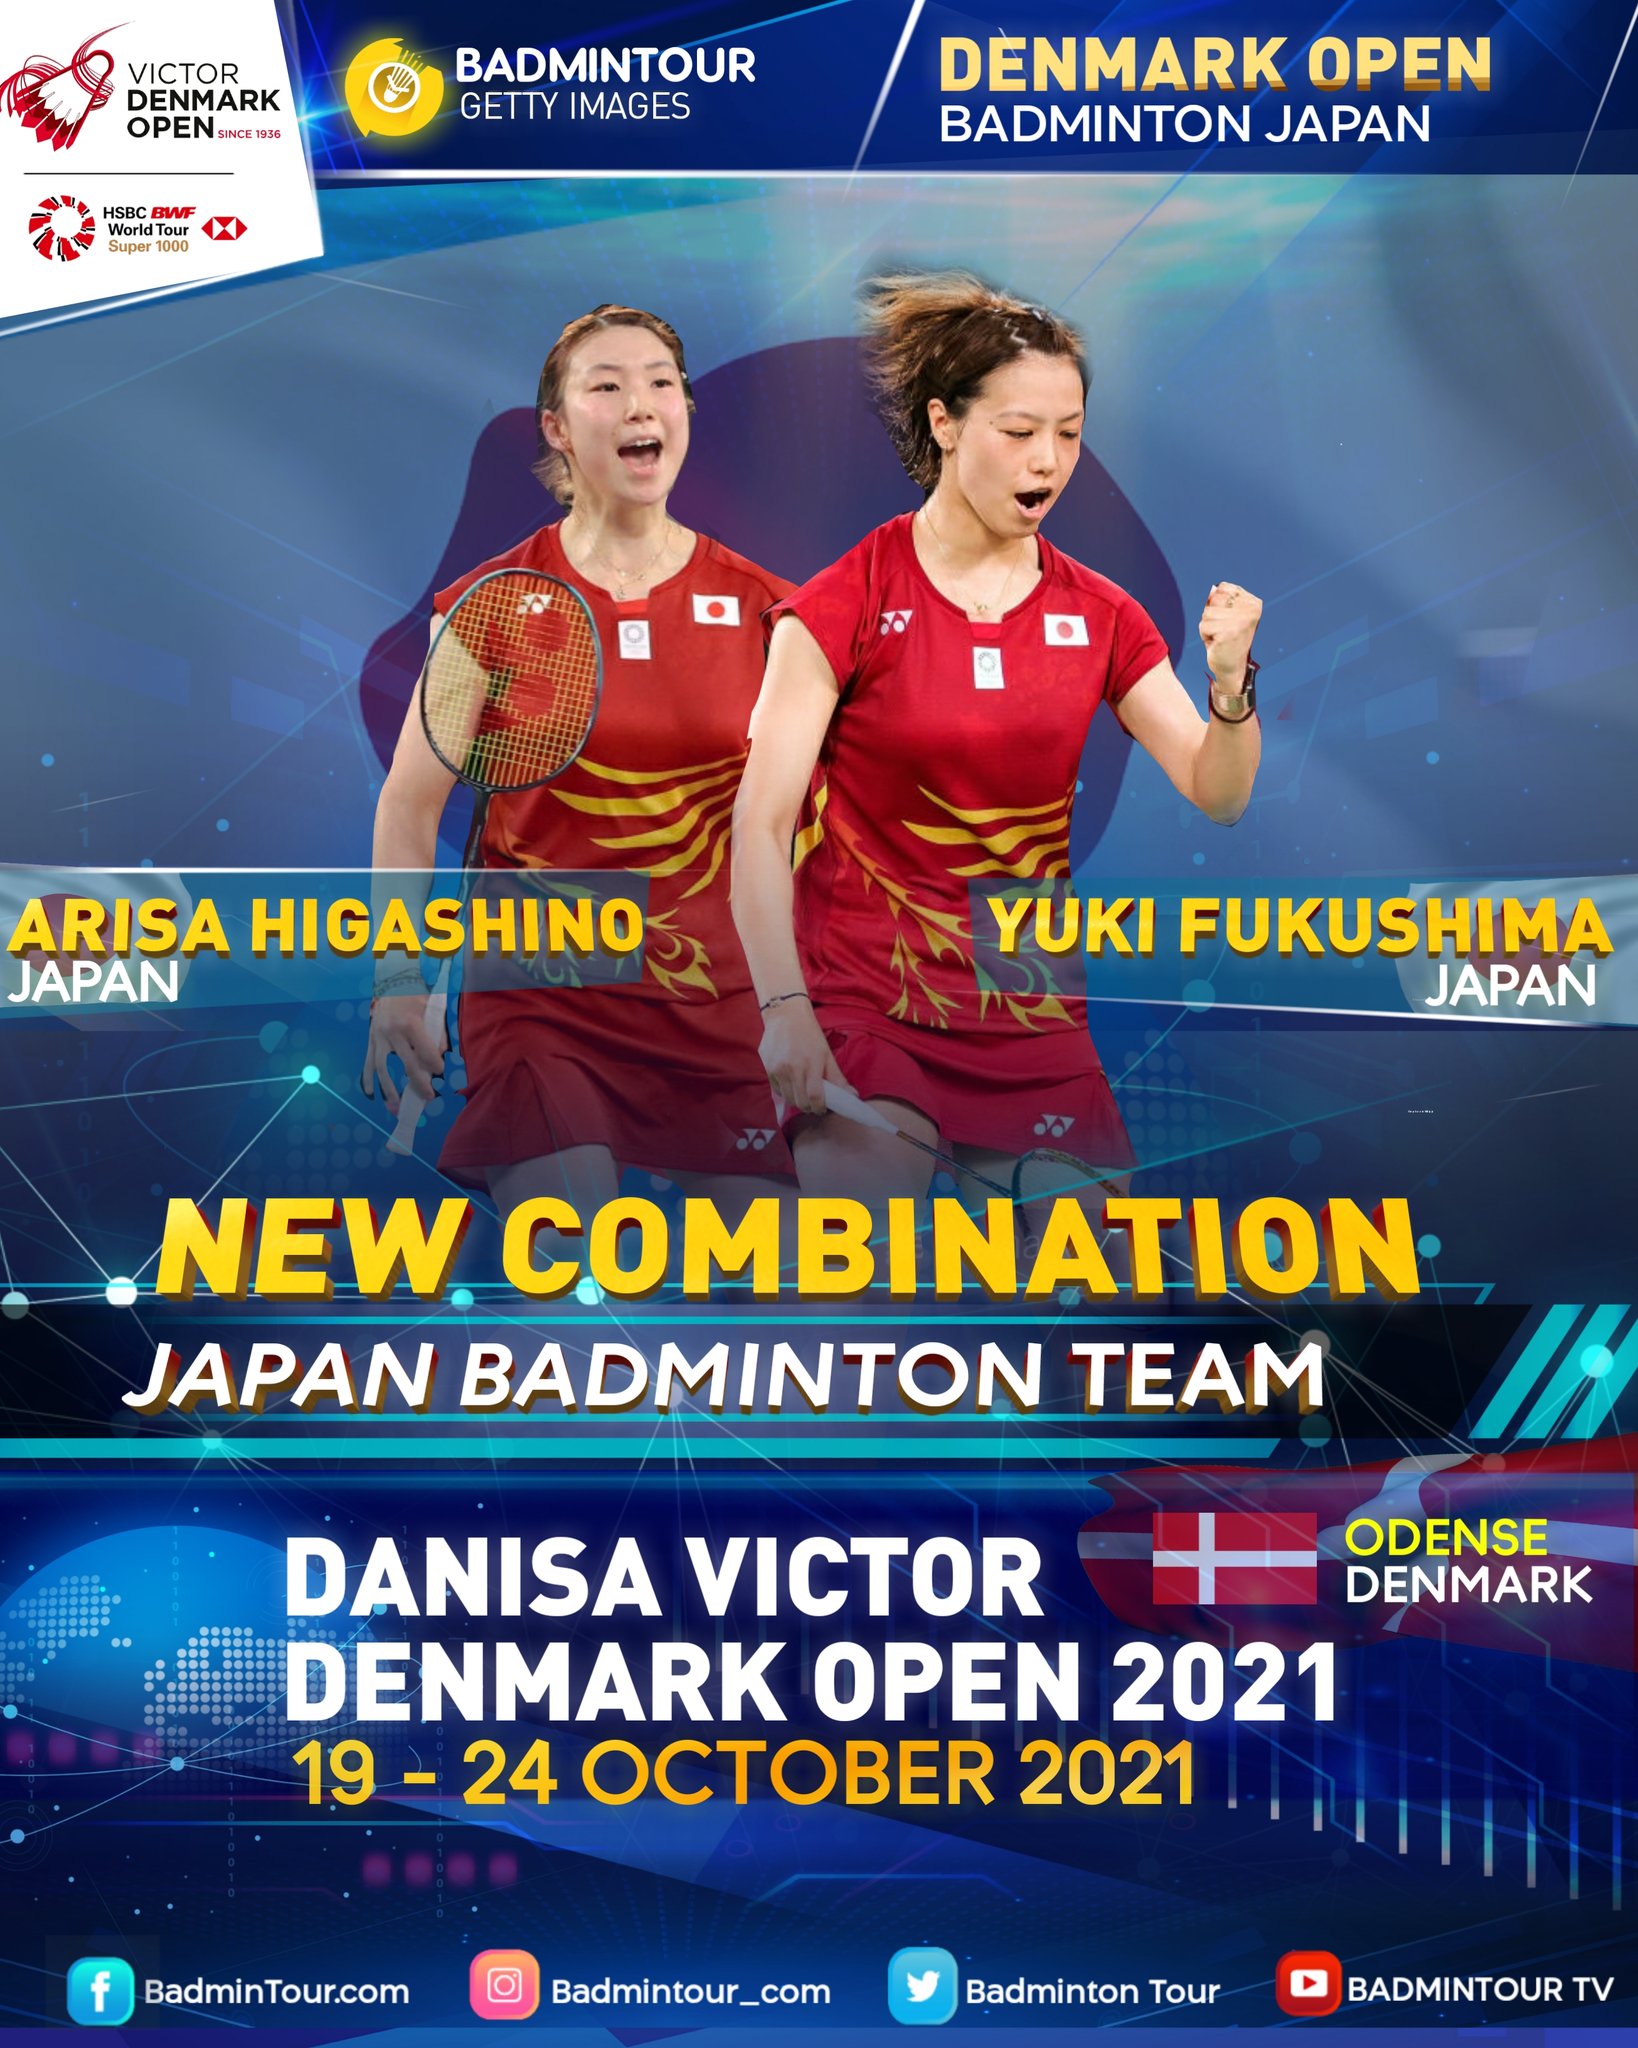 Denmark open schedule 2021